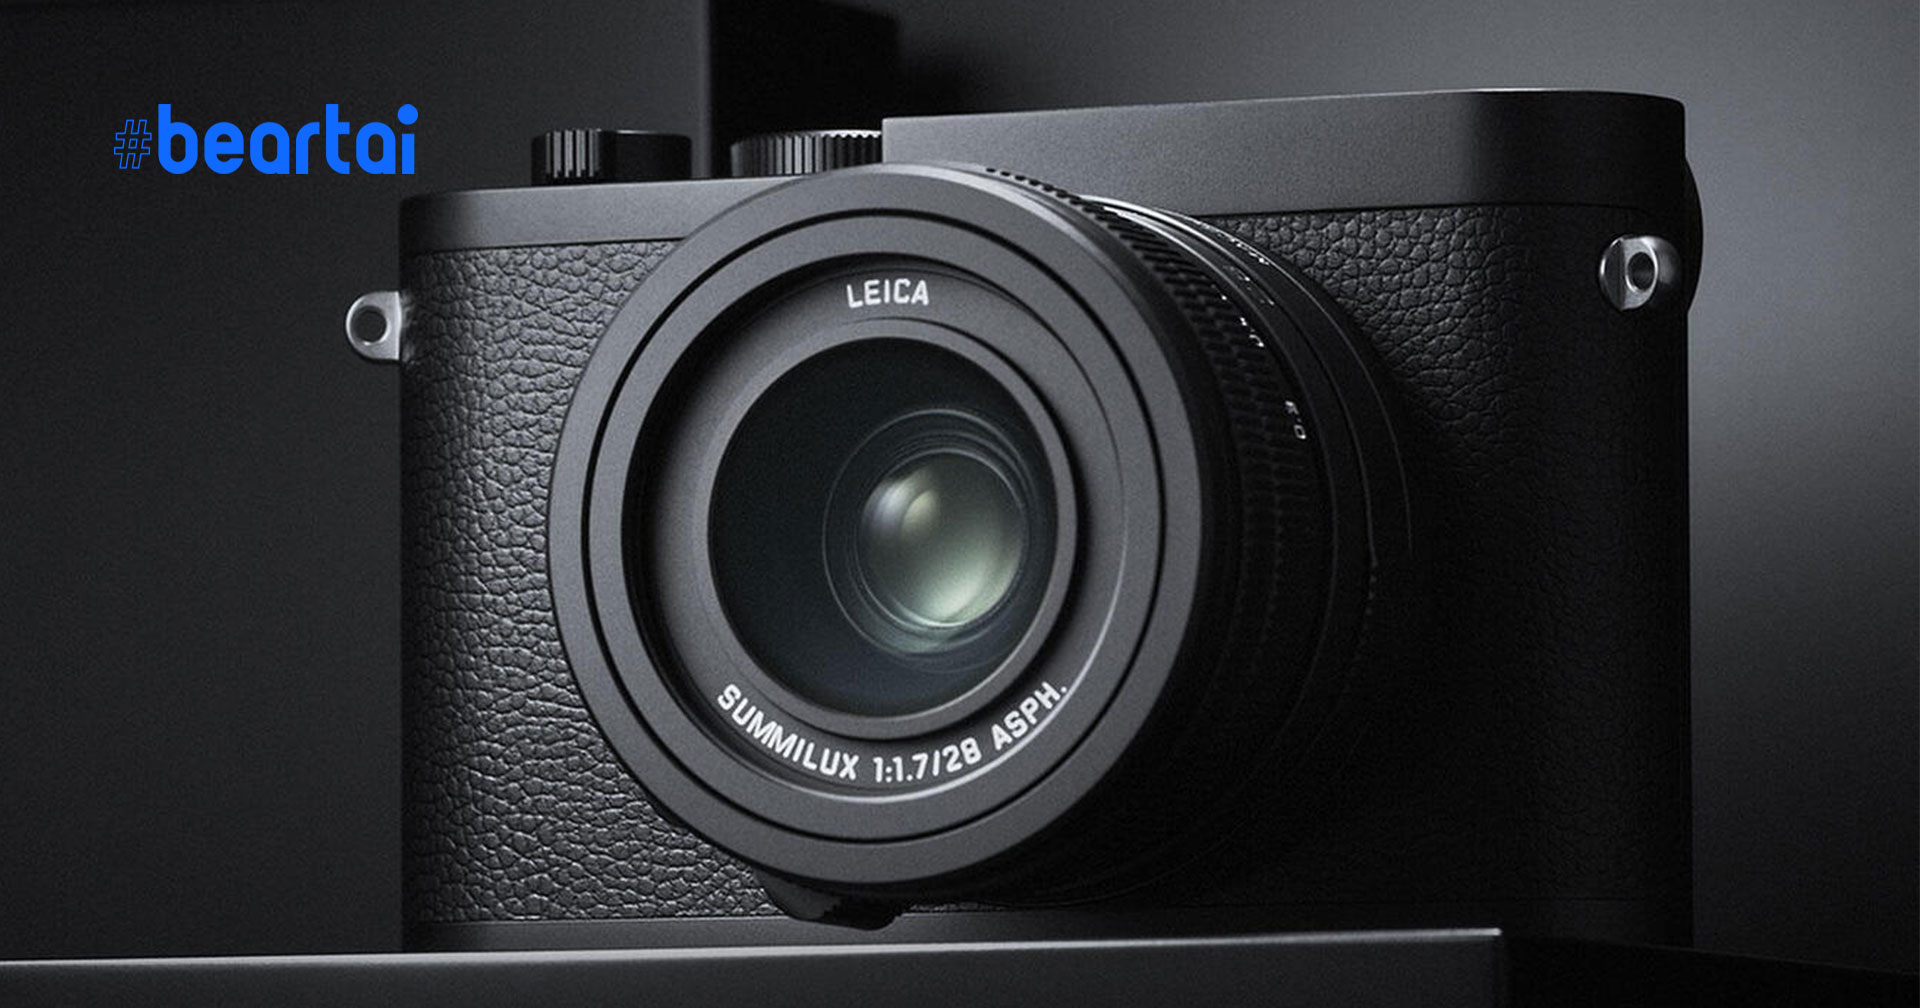 เปิดตัว Leica Q2 Monochrom กล้องขาวดำ ความละเอียด 47 ล้านพิกเซล!